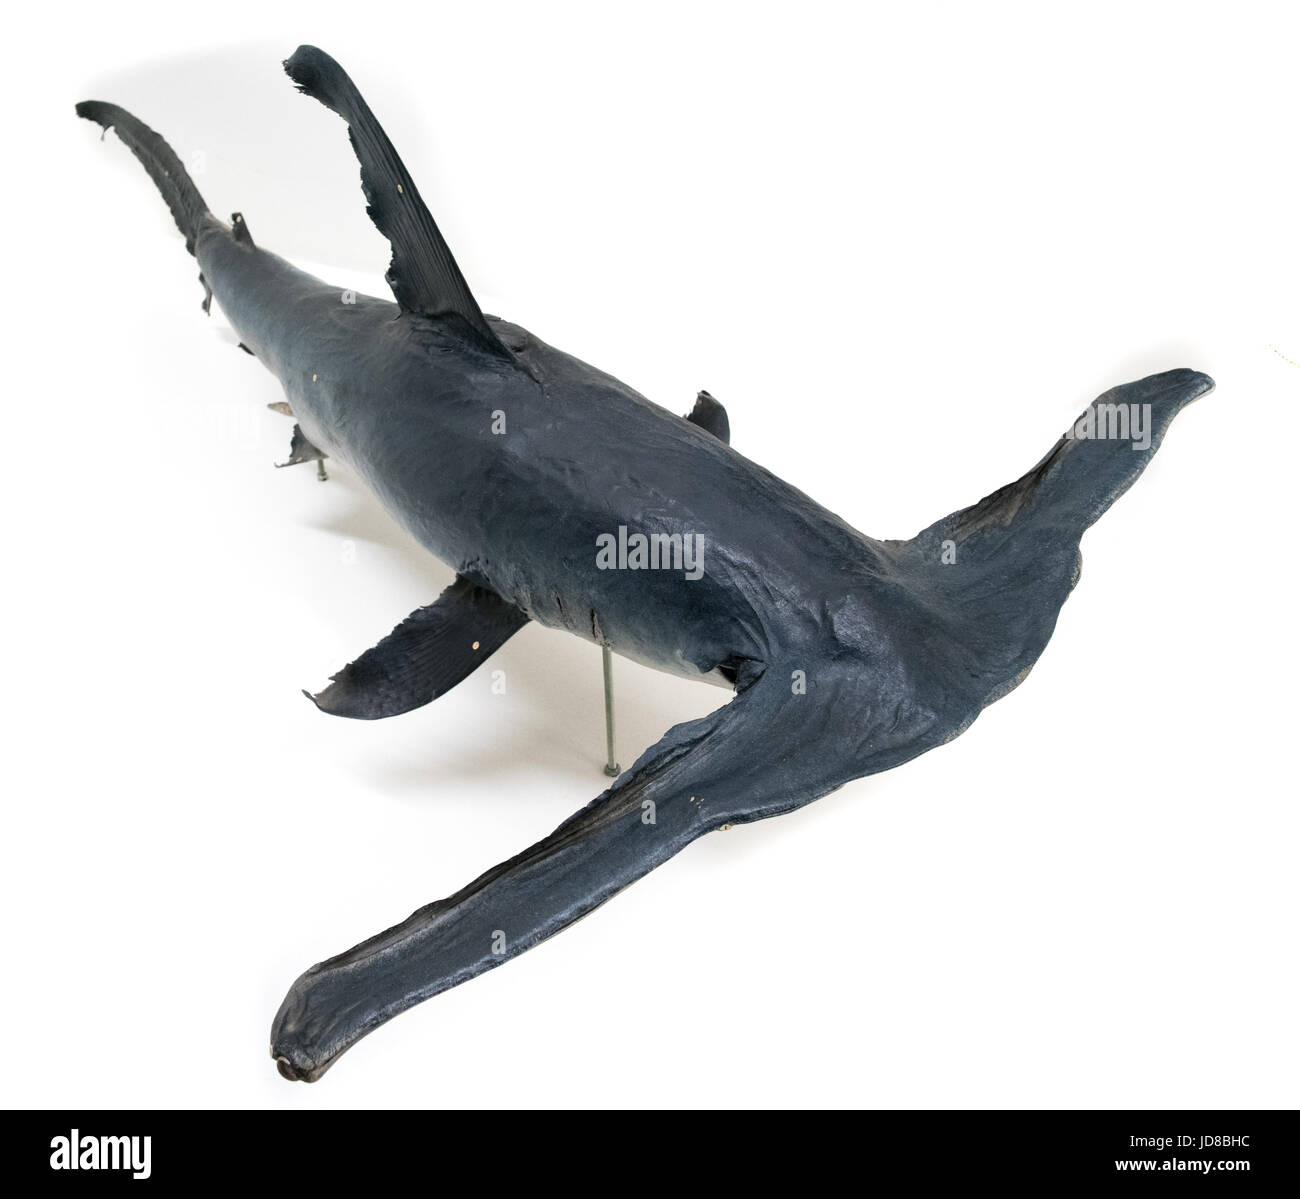 Retrato de un tiburón martillo contra un fondo completamente blanco, studio shot. peluche imagen color aislado Foto de stock